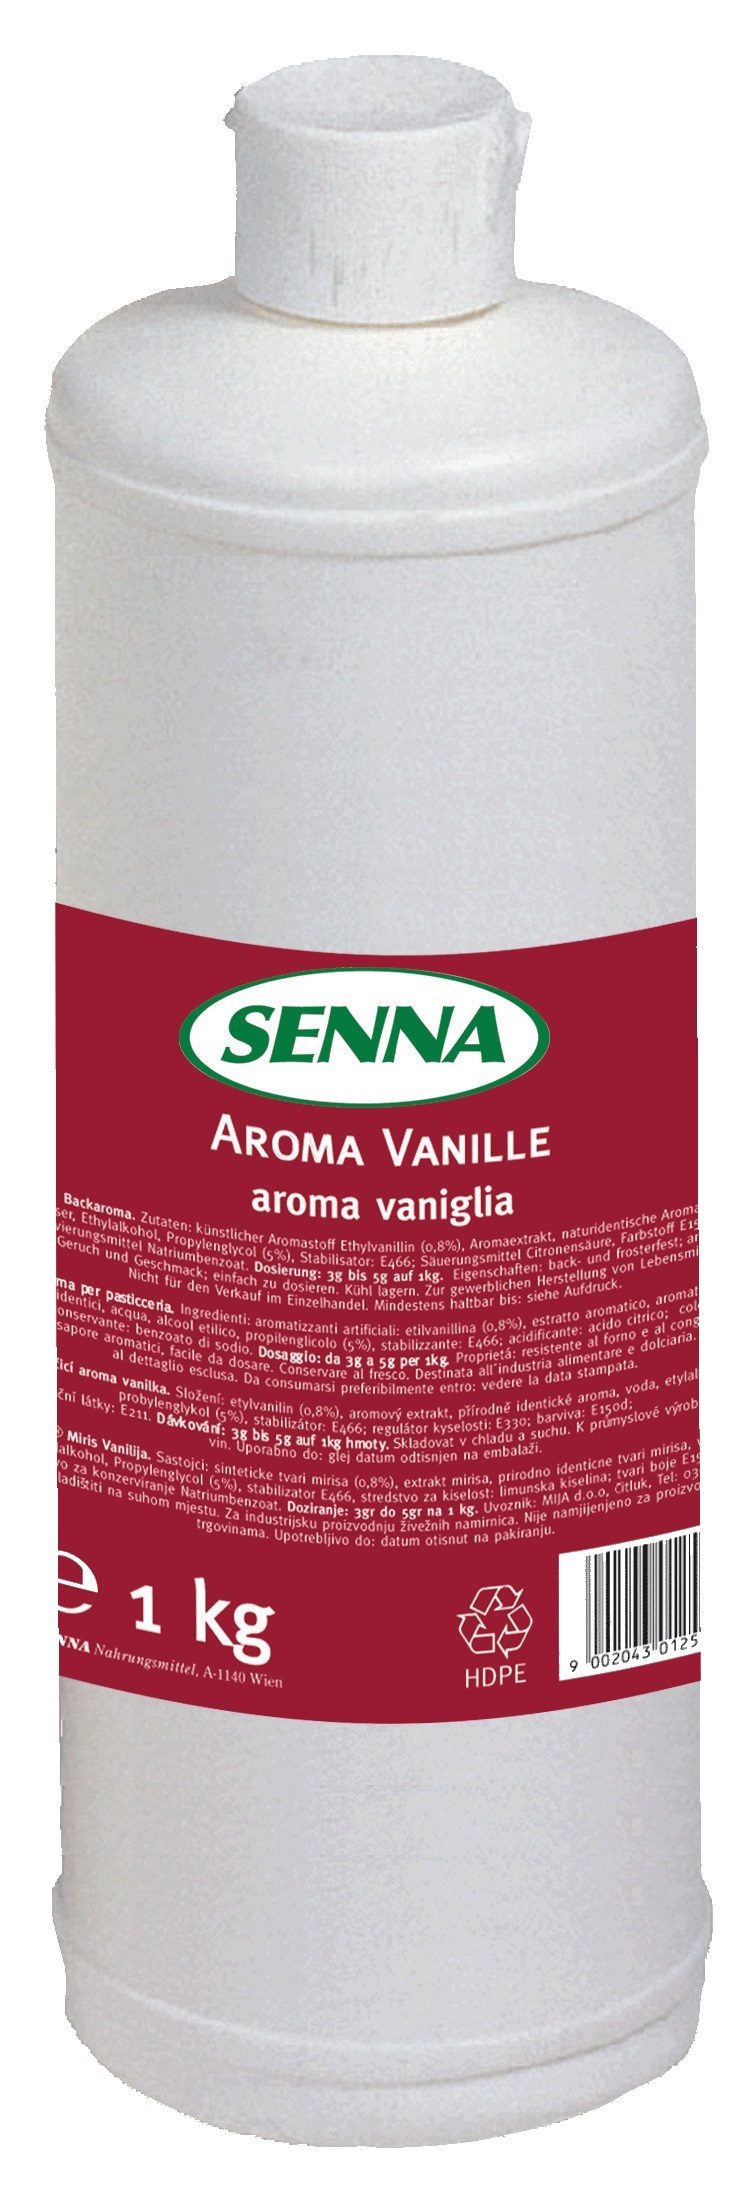 1248310 Senna Aroma Vanille